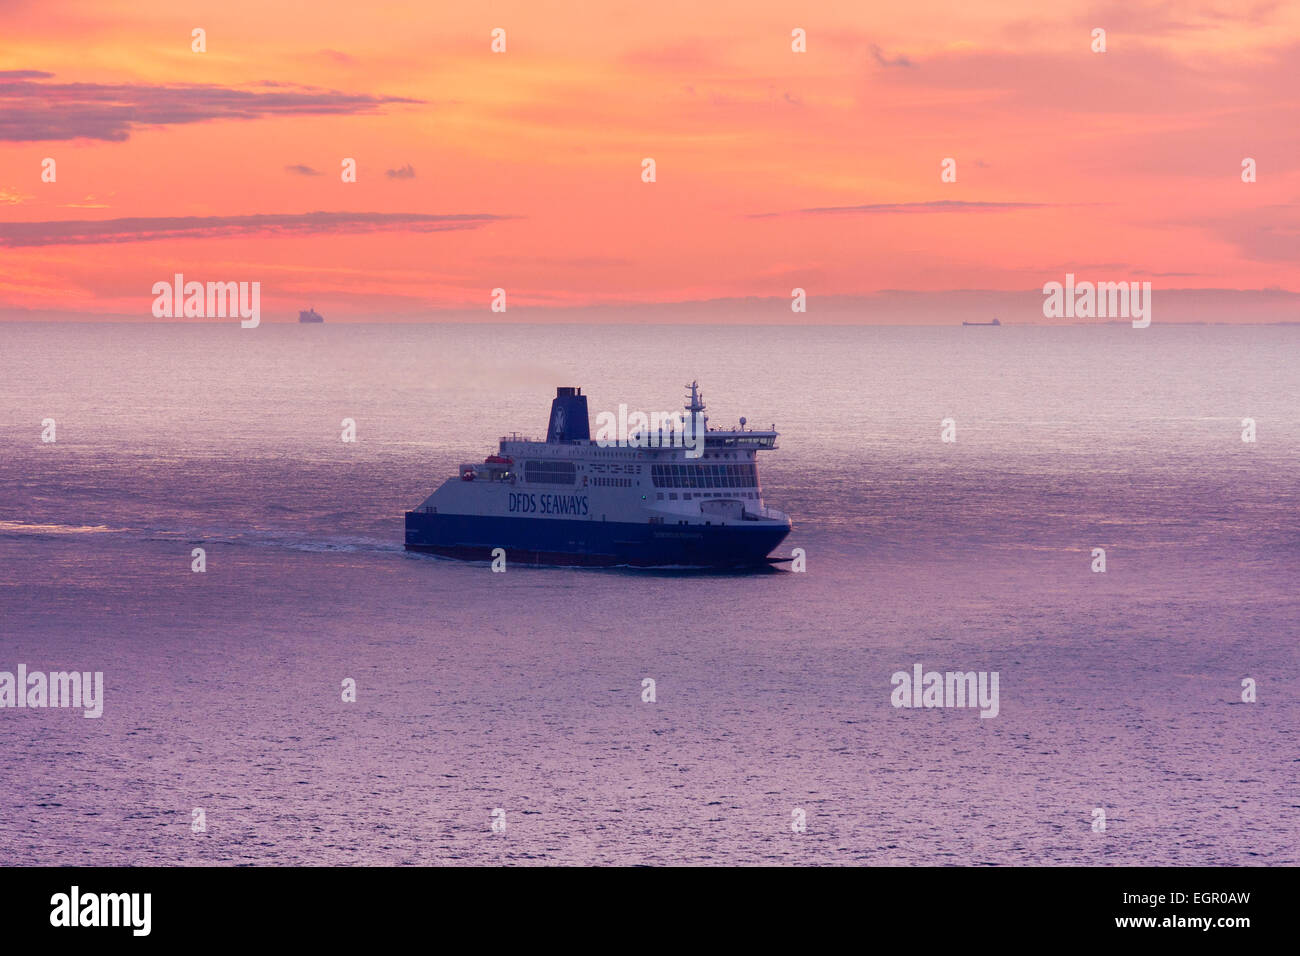 Dover. Traghetto in auto 'DDS Seaways' in mare che naviga attraverso la Manica all'alba con un cielo rosso e nuvole all'orizzonte sopra la costa francese. Foto Stock